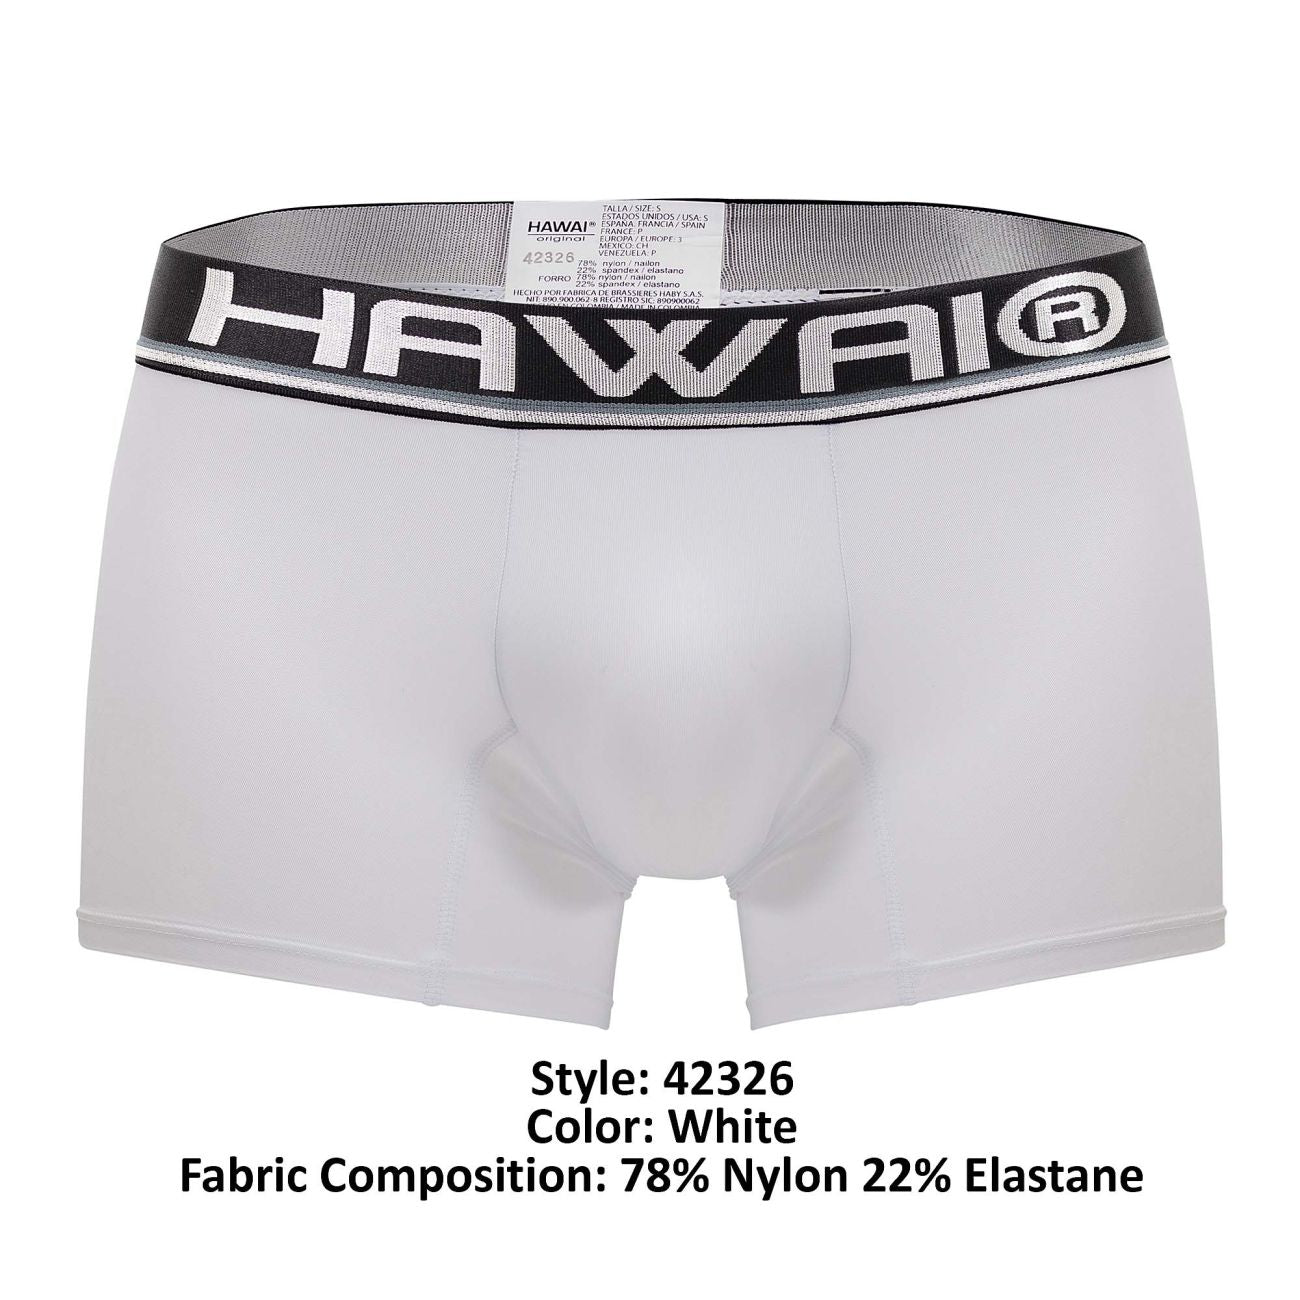 HAWAI 42326 Microfiber Boxer Briefs White